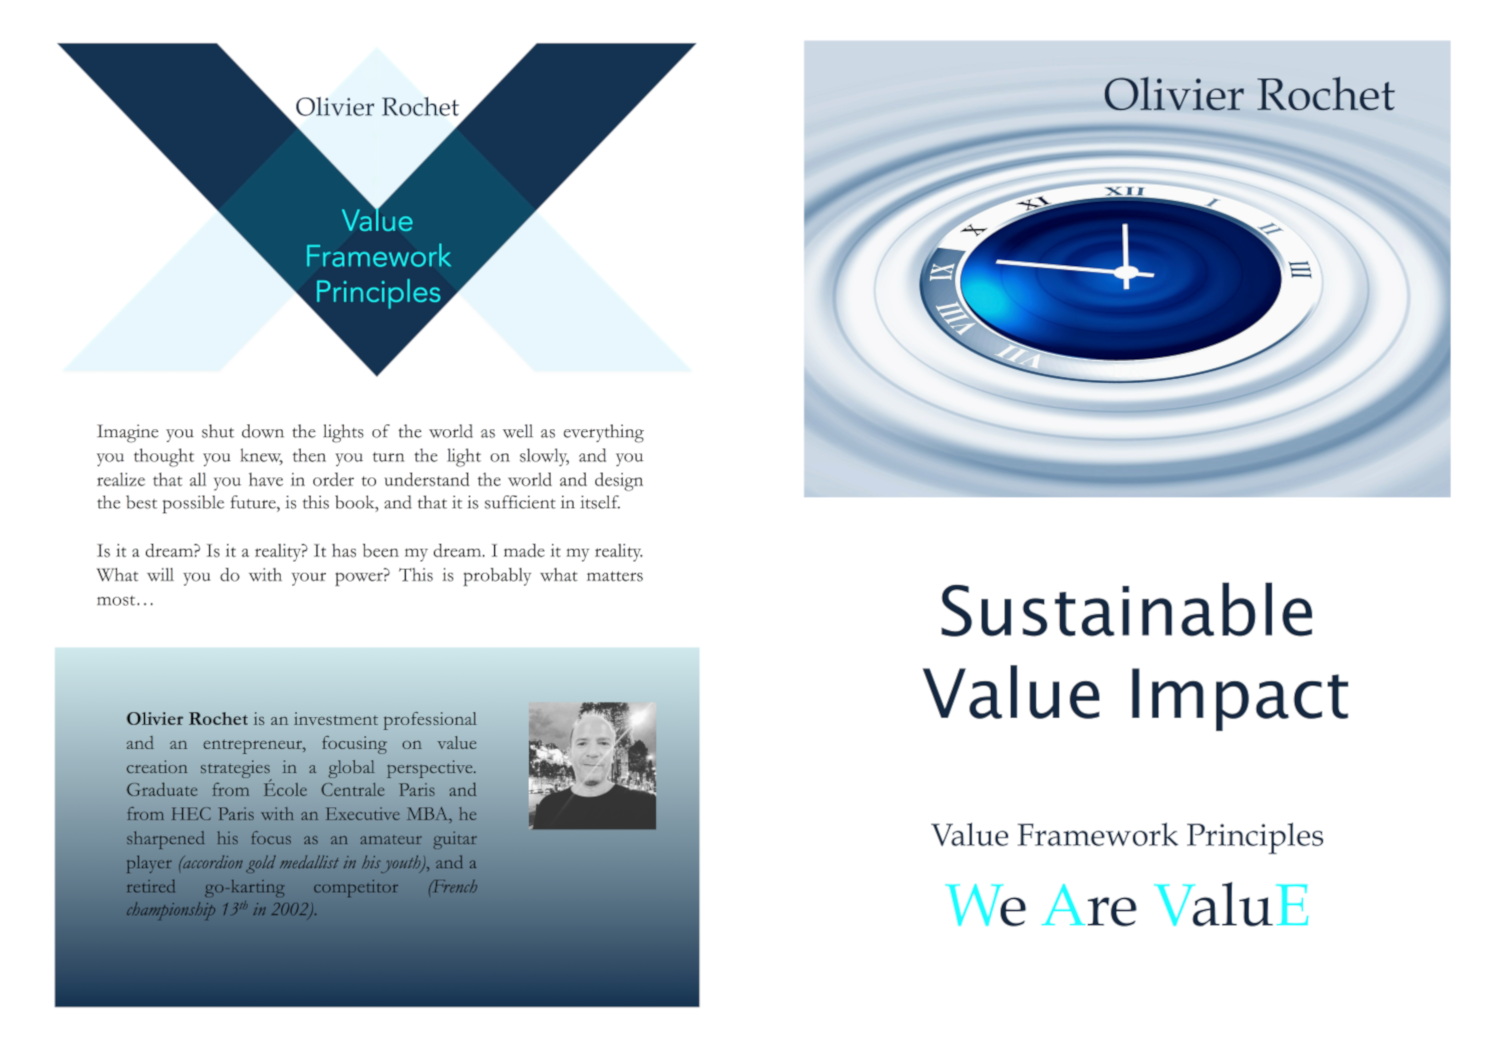 Value Framework Principles